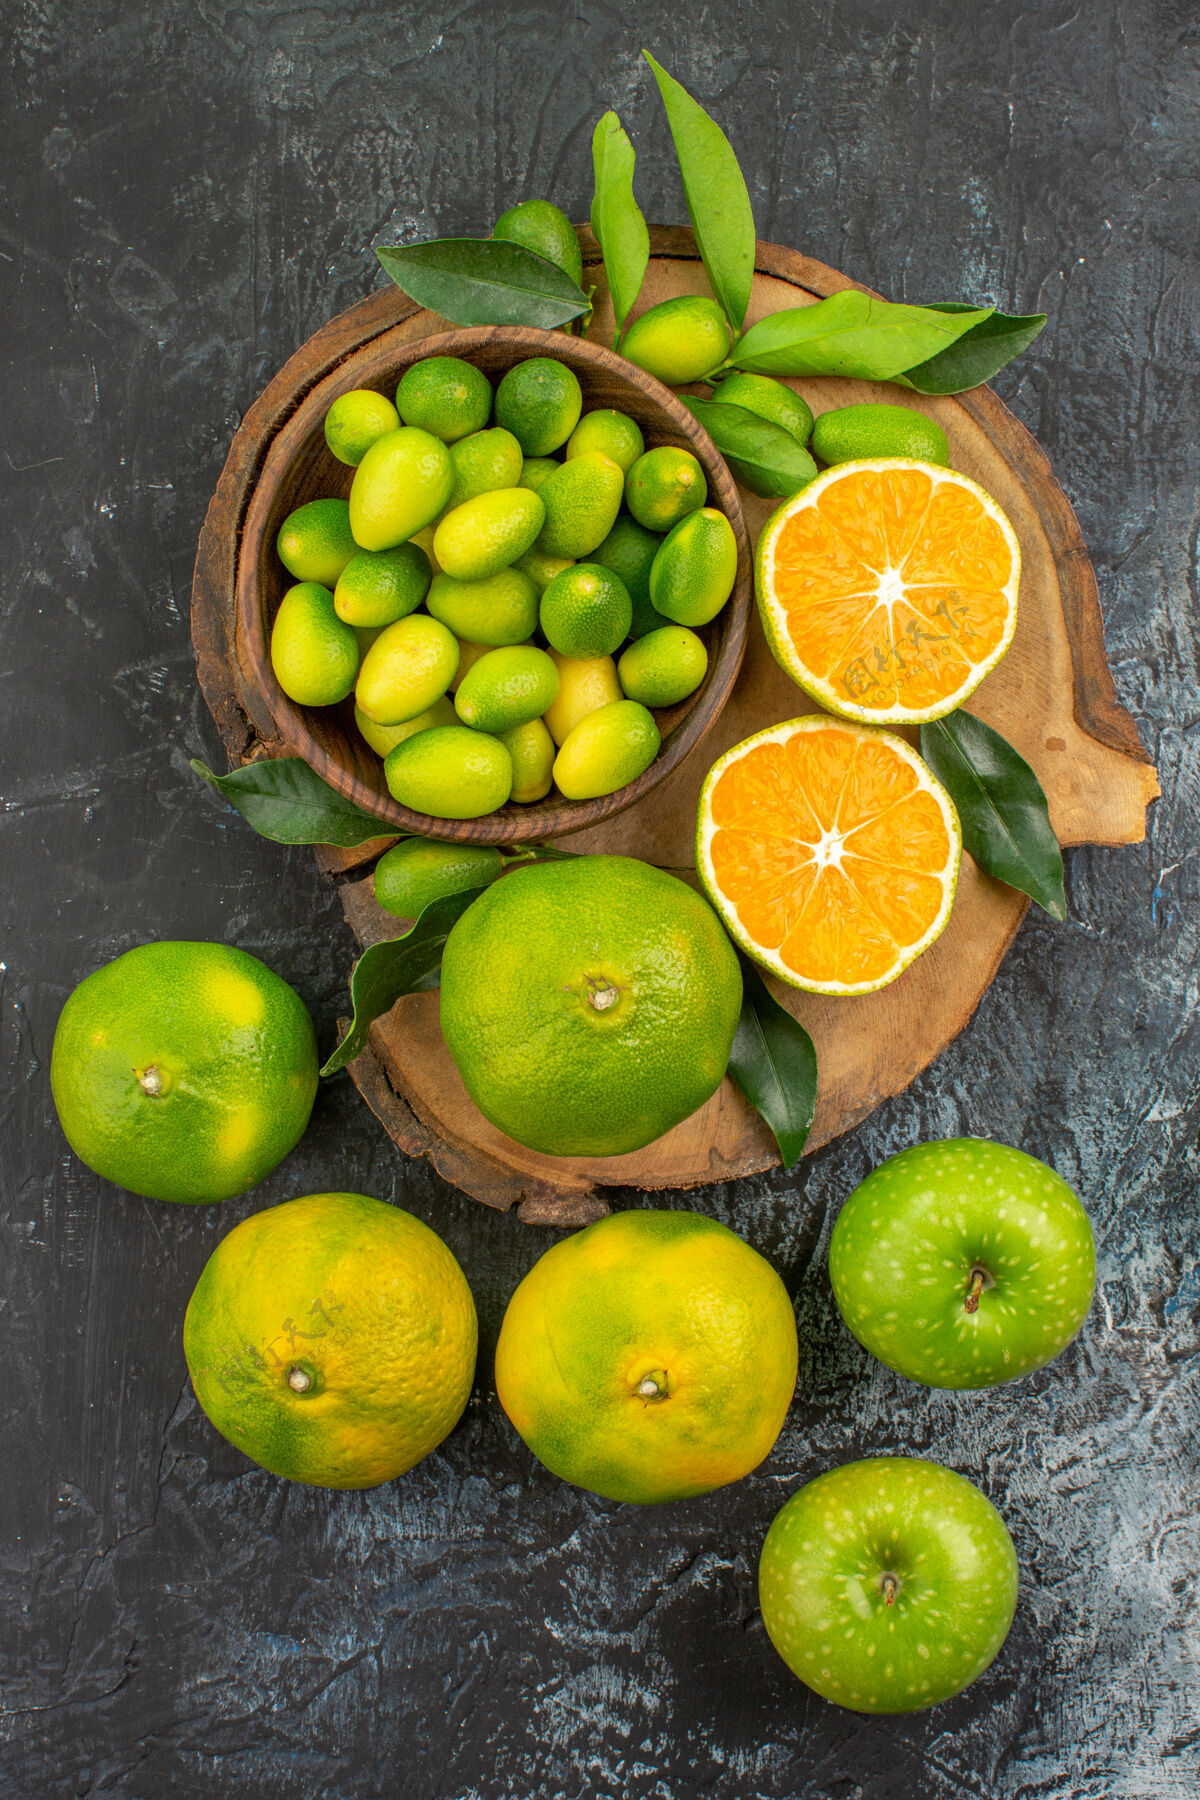 板顶部特写镜头：切菜板上有叶子的柑橘类水果芒果可食用水果切